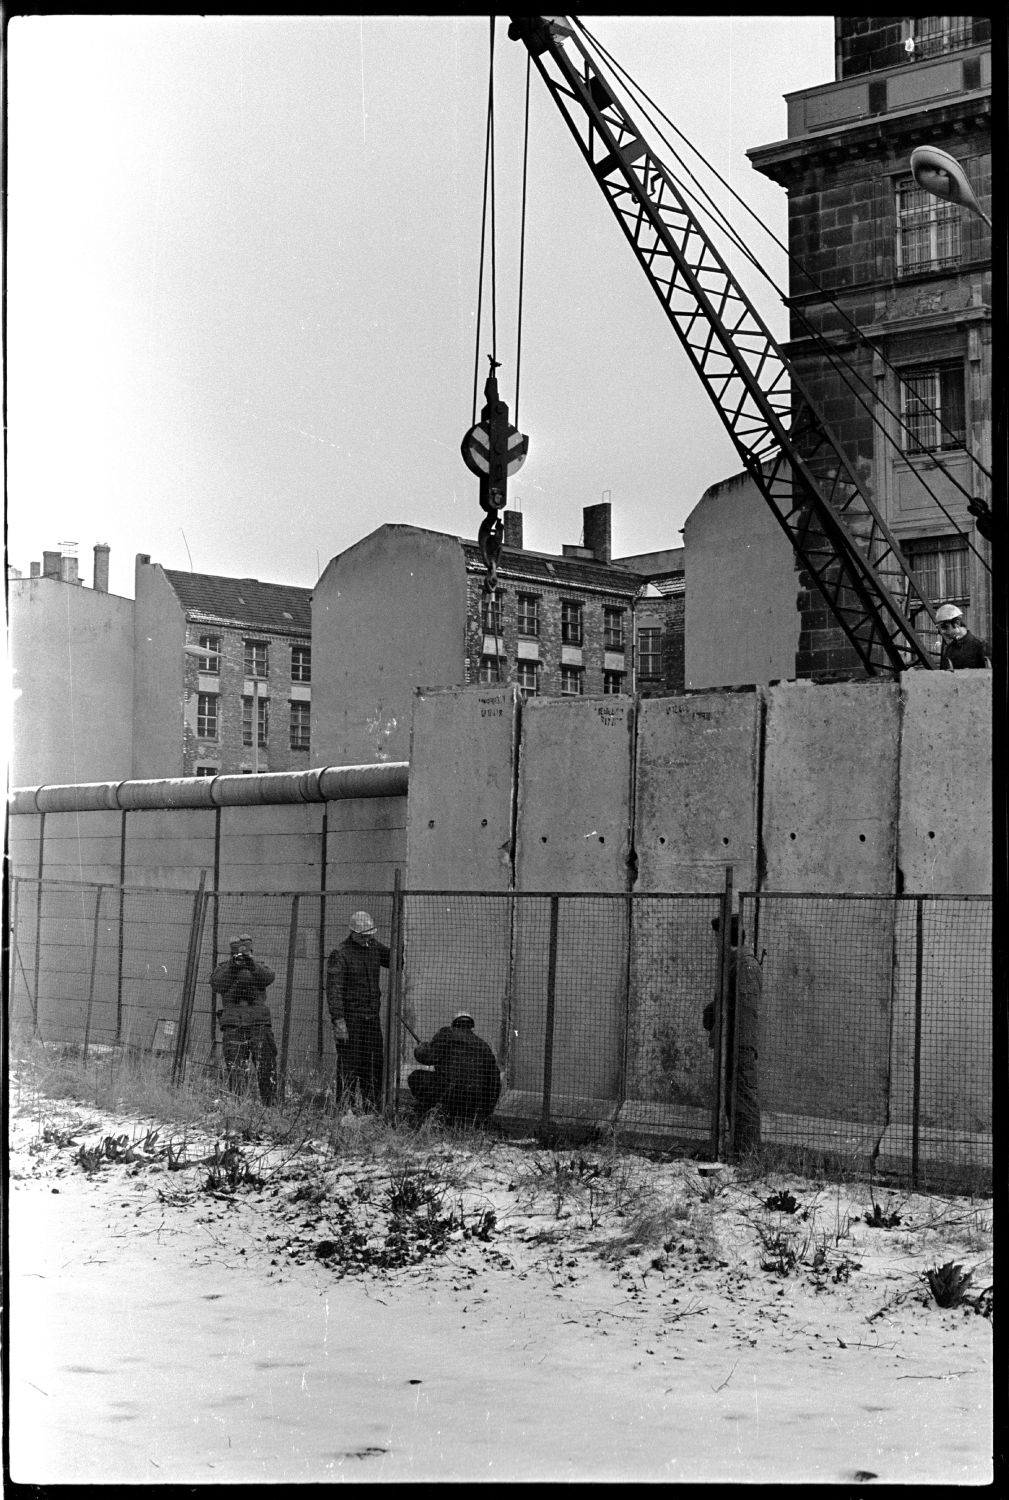 s/w-Fotografie: Ausbau der Berliner Mauer am Brandenburger Tor in Berlin-Mitte (AlliiertenMuseum/U.S. Army Photograph Public Domain Mark)